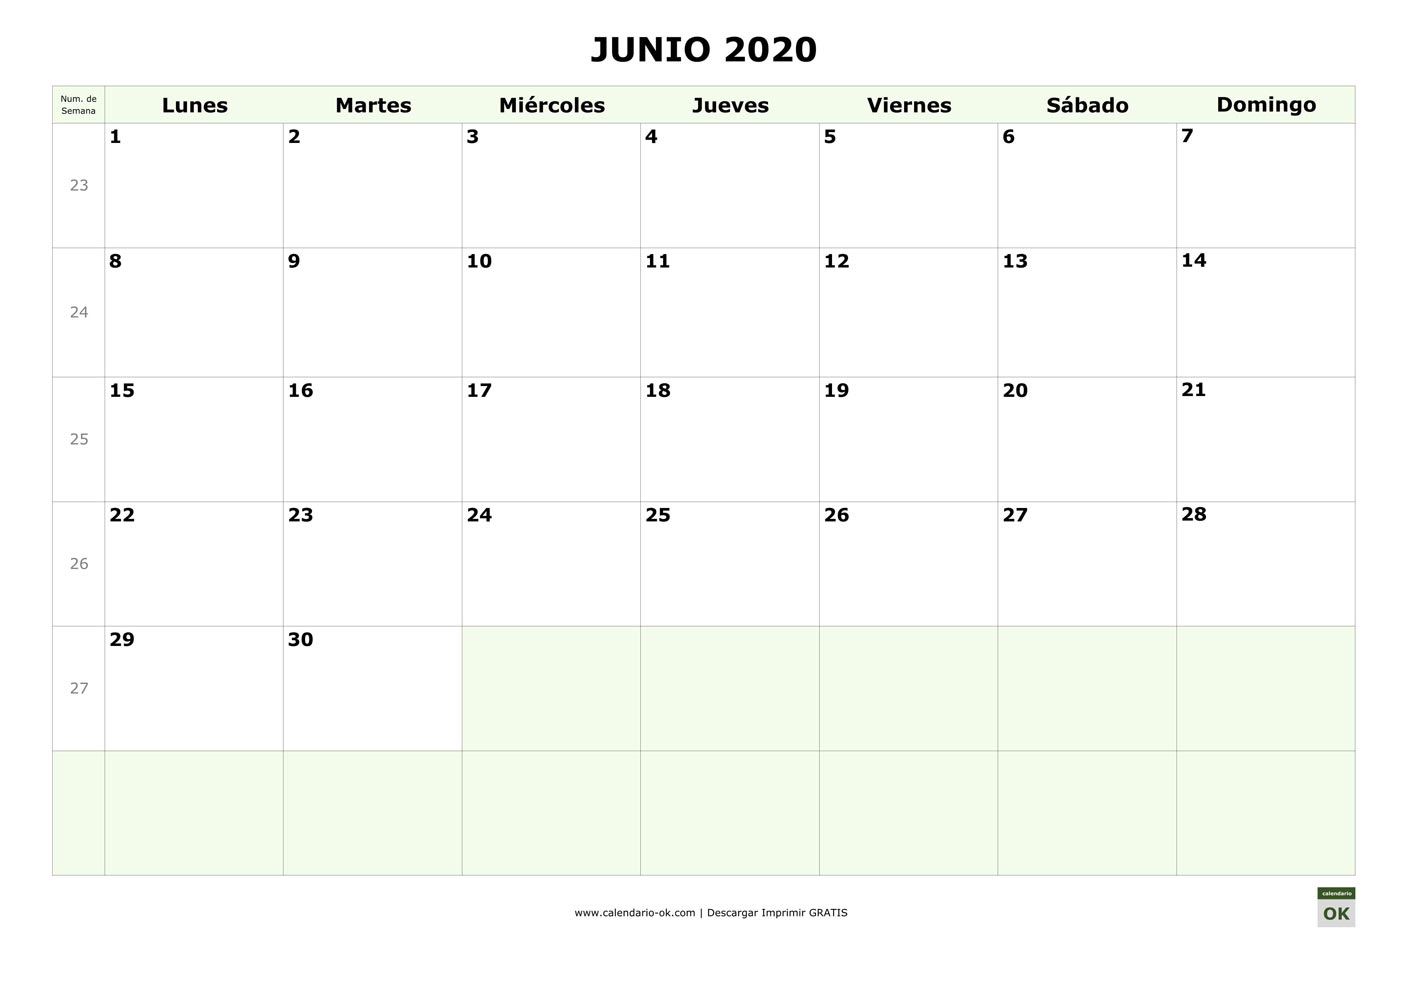 JUNIO 2020 con Numero de Semana